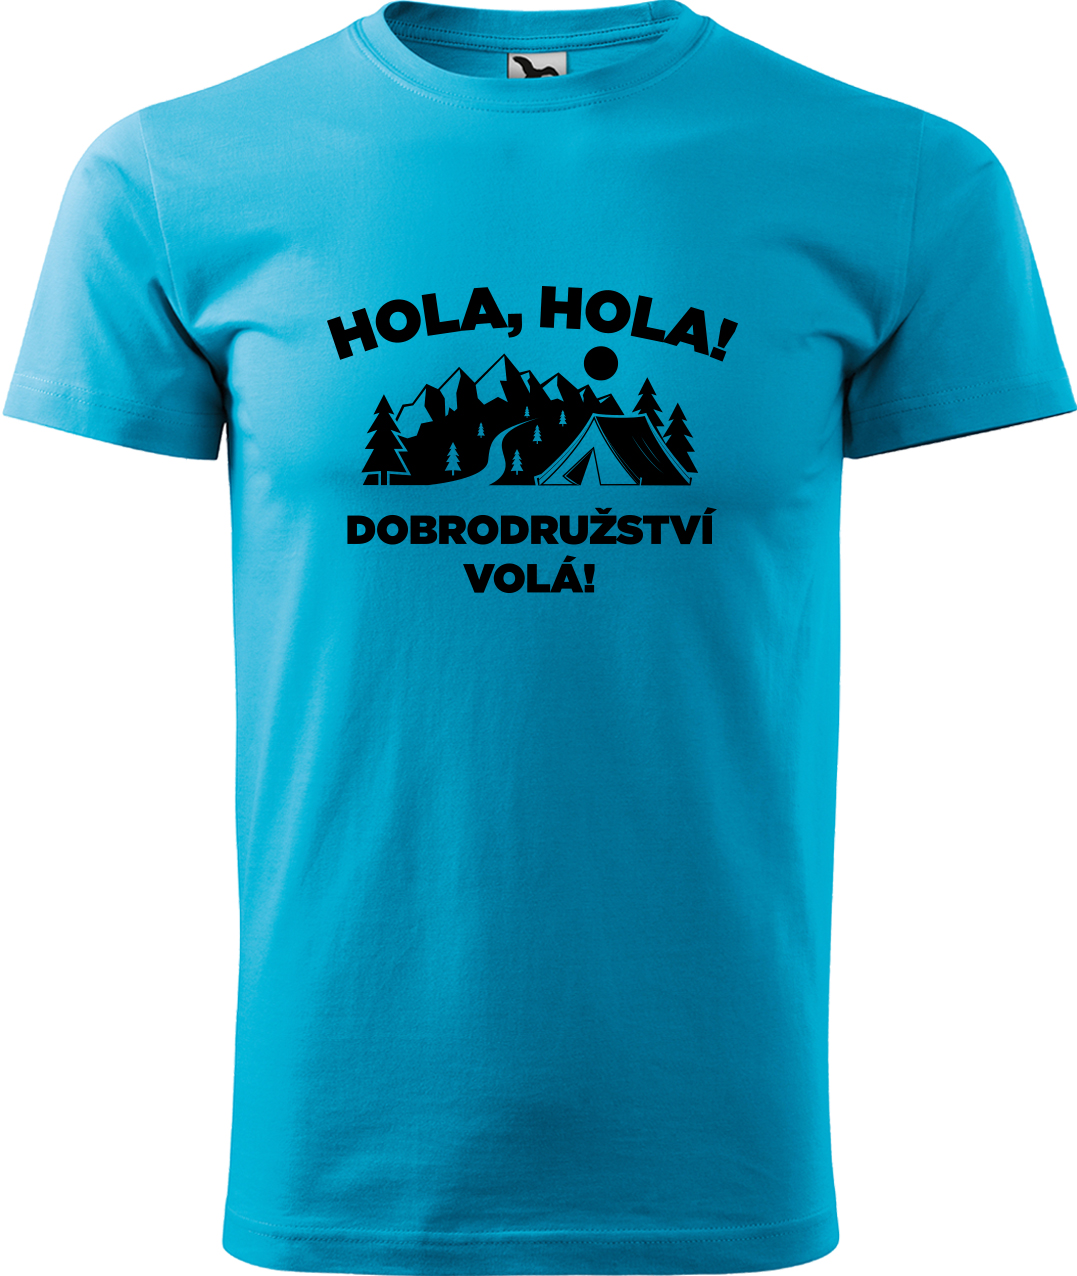 Pánské cestovatelské tričko - Hola hola! Dobrodružství volá! Velikost: L, Barva: Tyrkysová (44), Střih: pánský